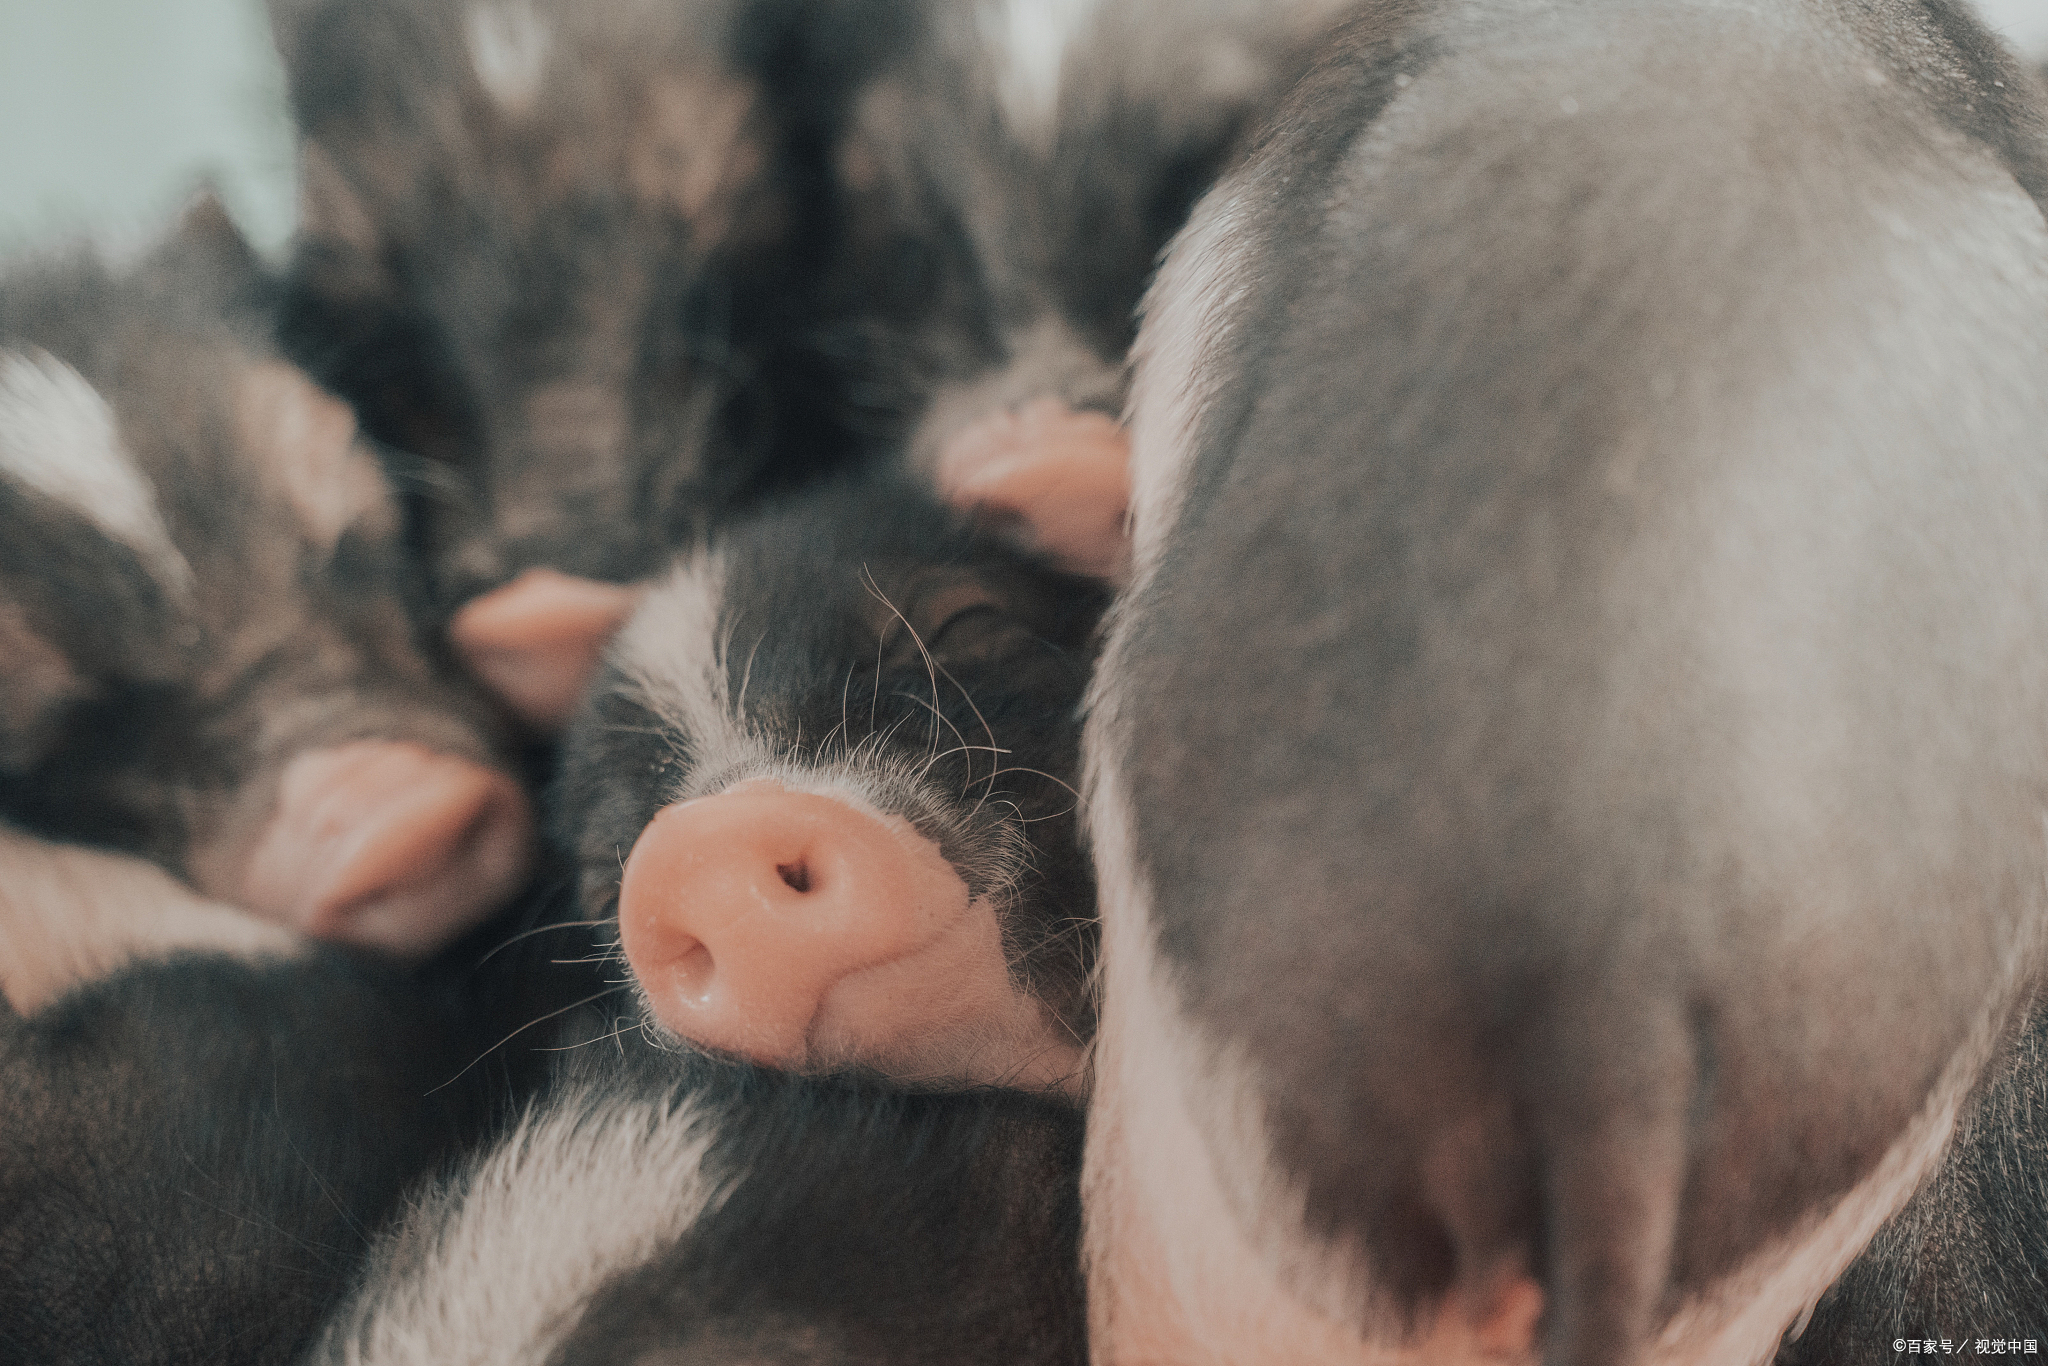 猪传染性胃肠炎|猪流行性腹泻怎么治